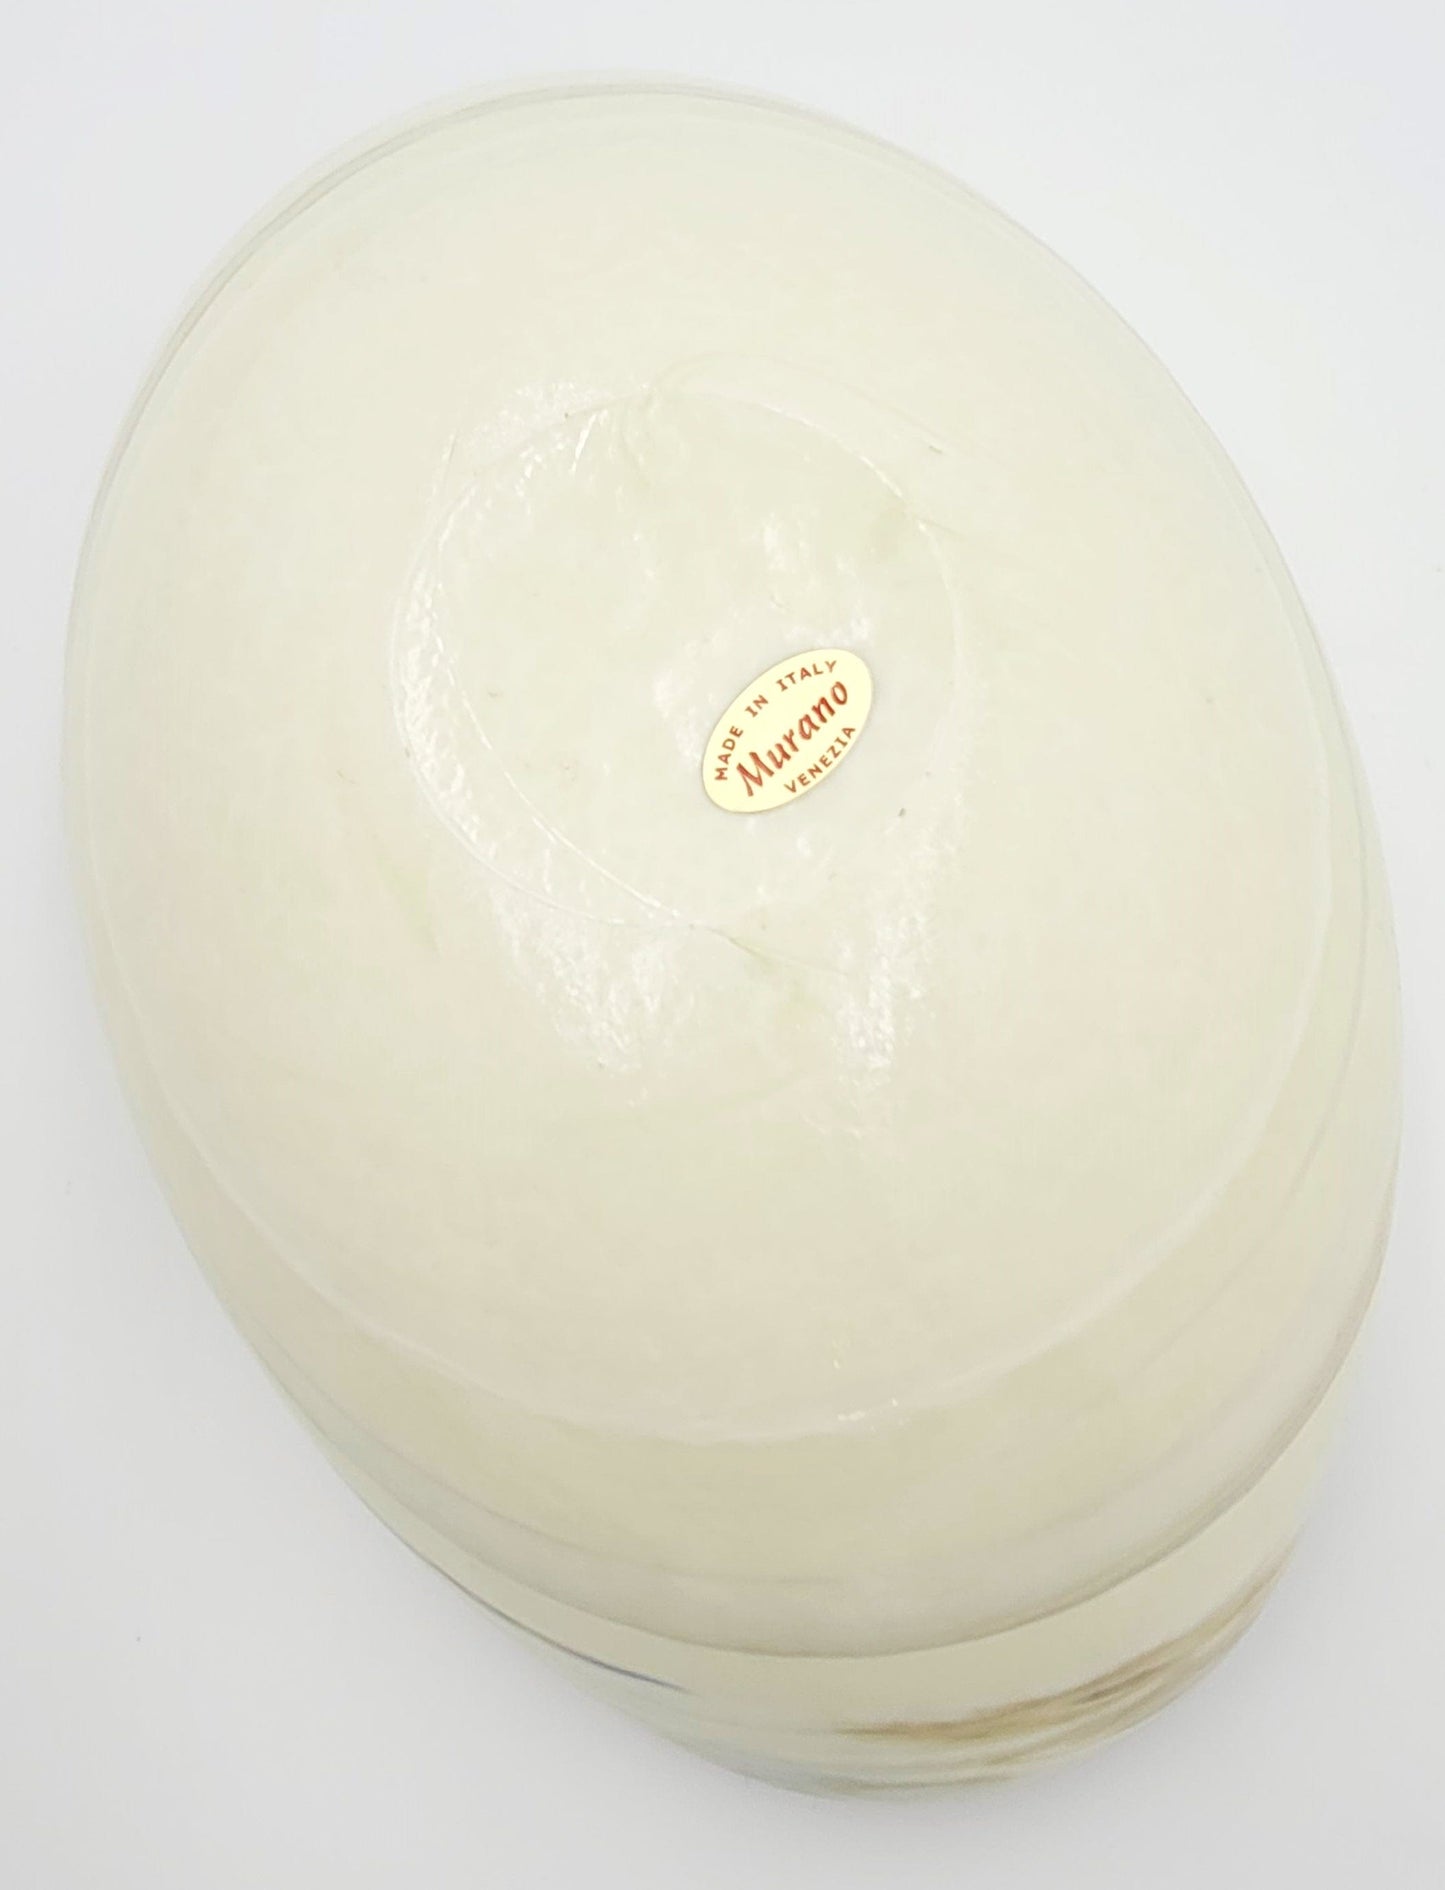 Murano Italy Centerpiece Decorative Bowl Italian Murano Glass Millefiori Cream Colored Curled Edge Décor Bowl C. 1990s